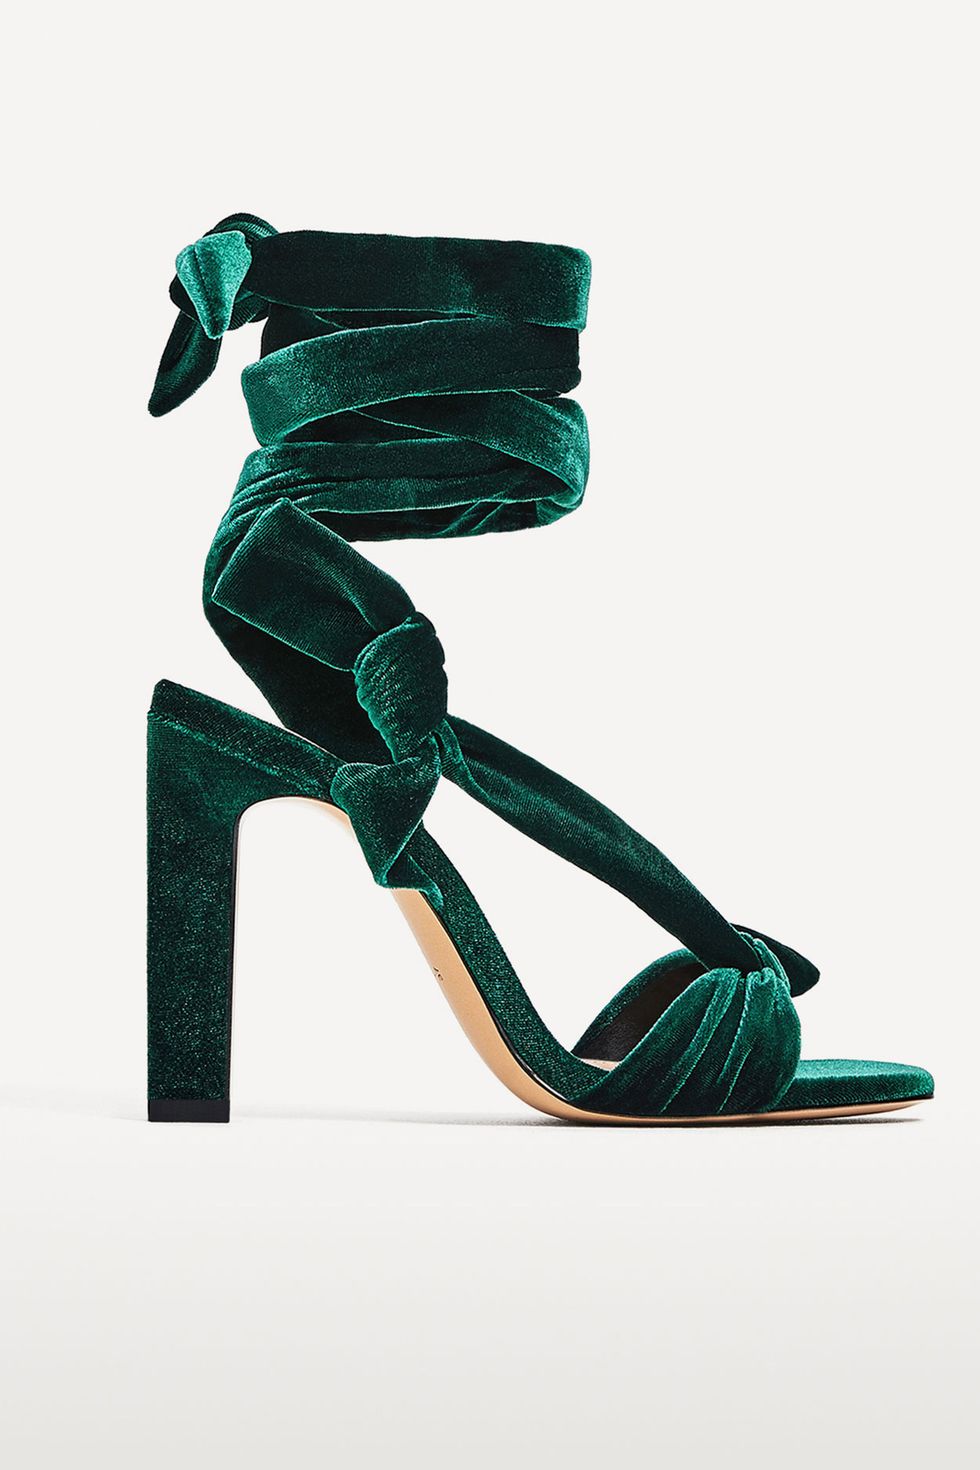 Zara green velvet shoes